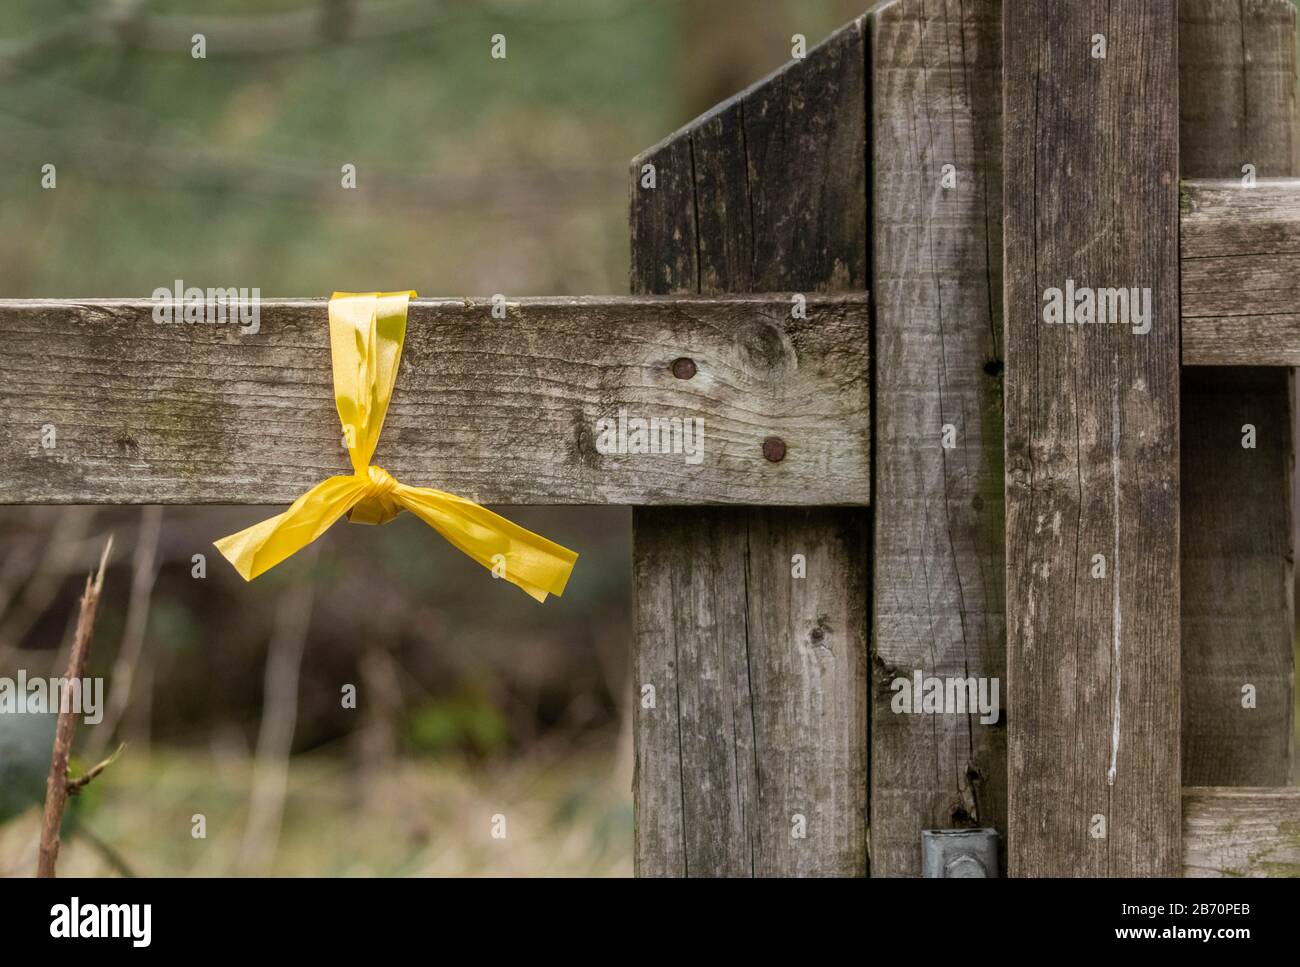 Una cinta amarilla atada a una valla muestra la ruta para un evento a pie. Foto de stock